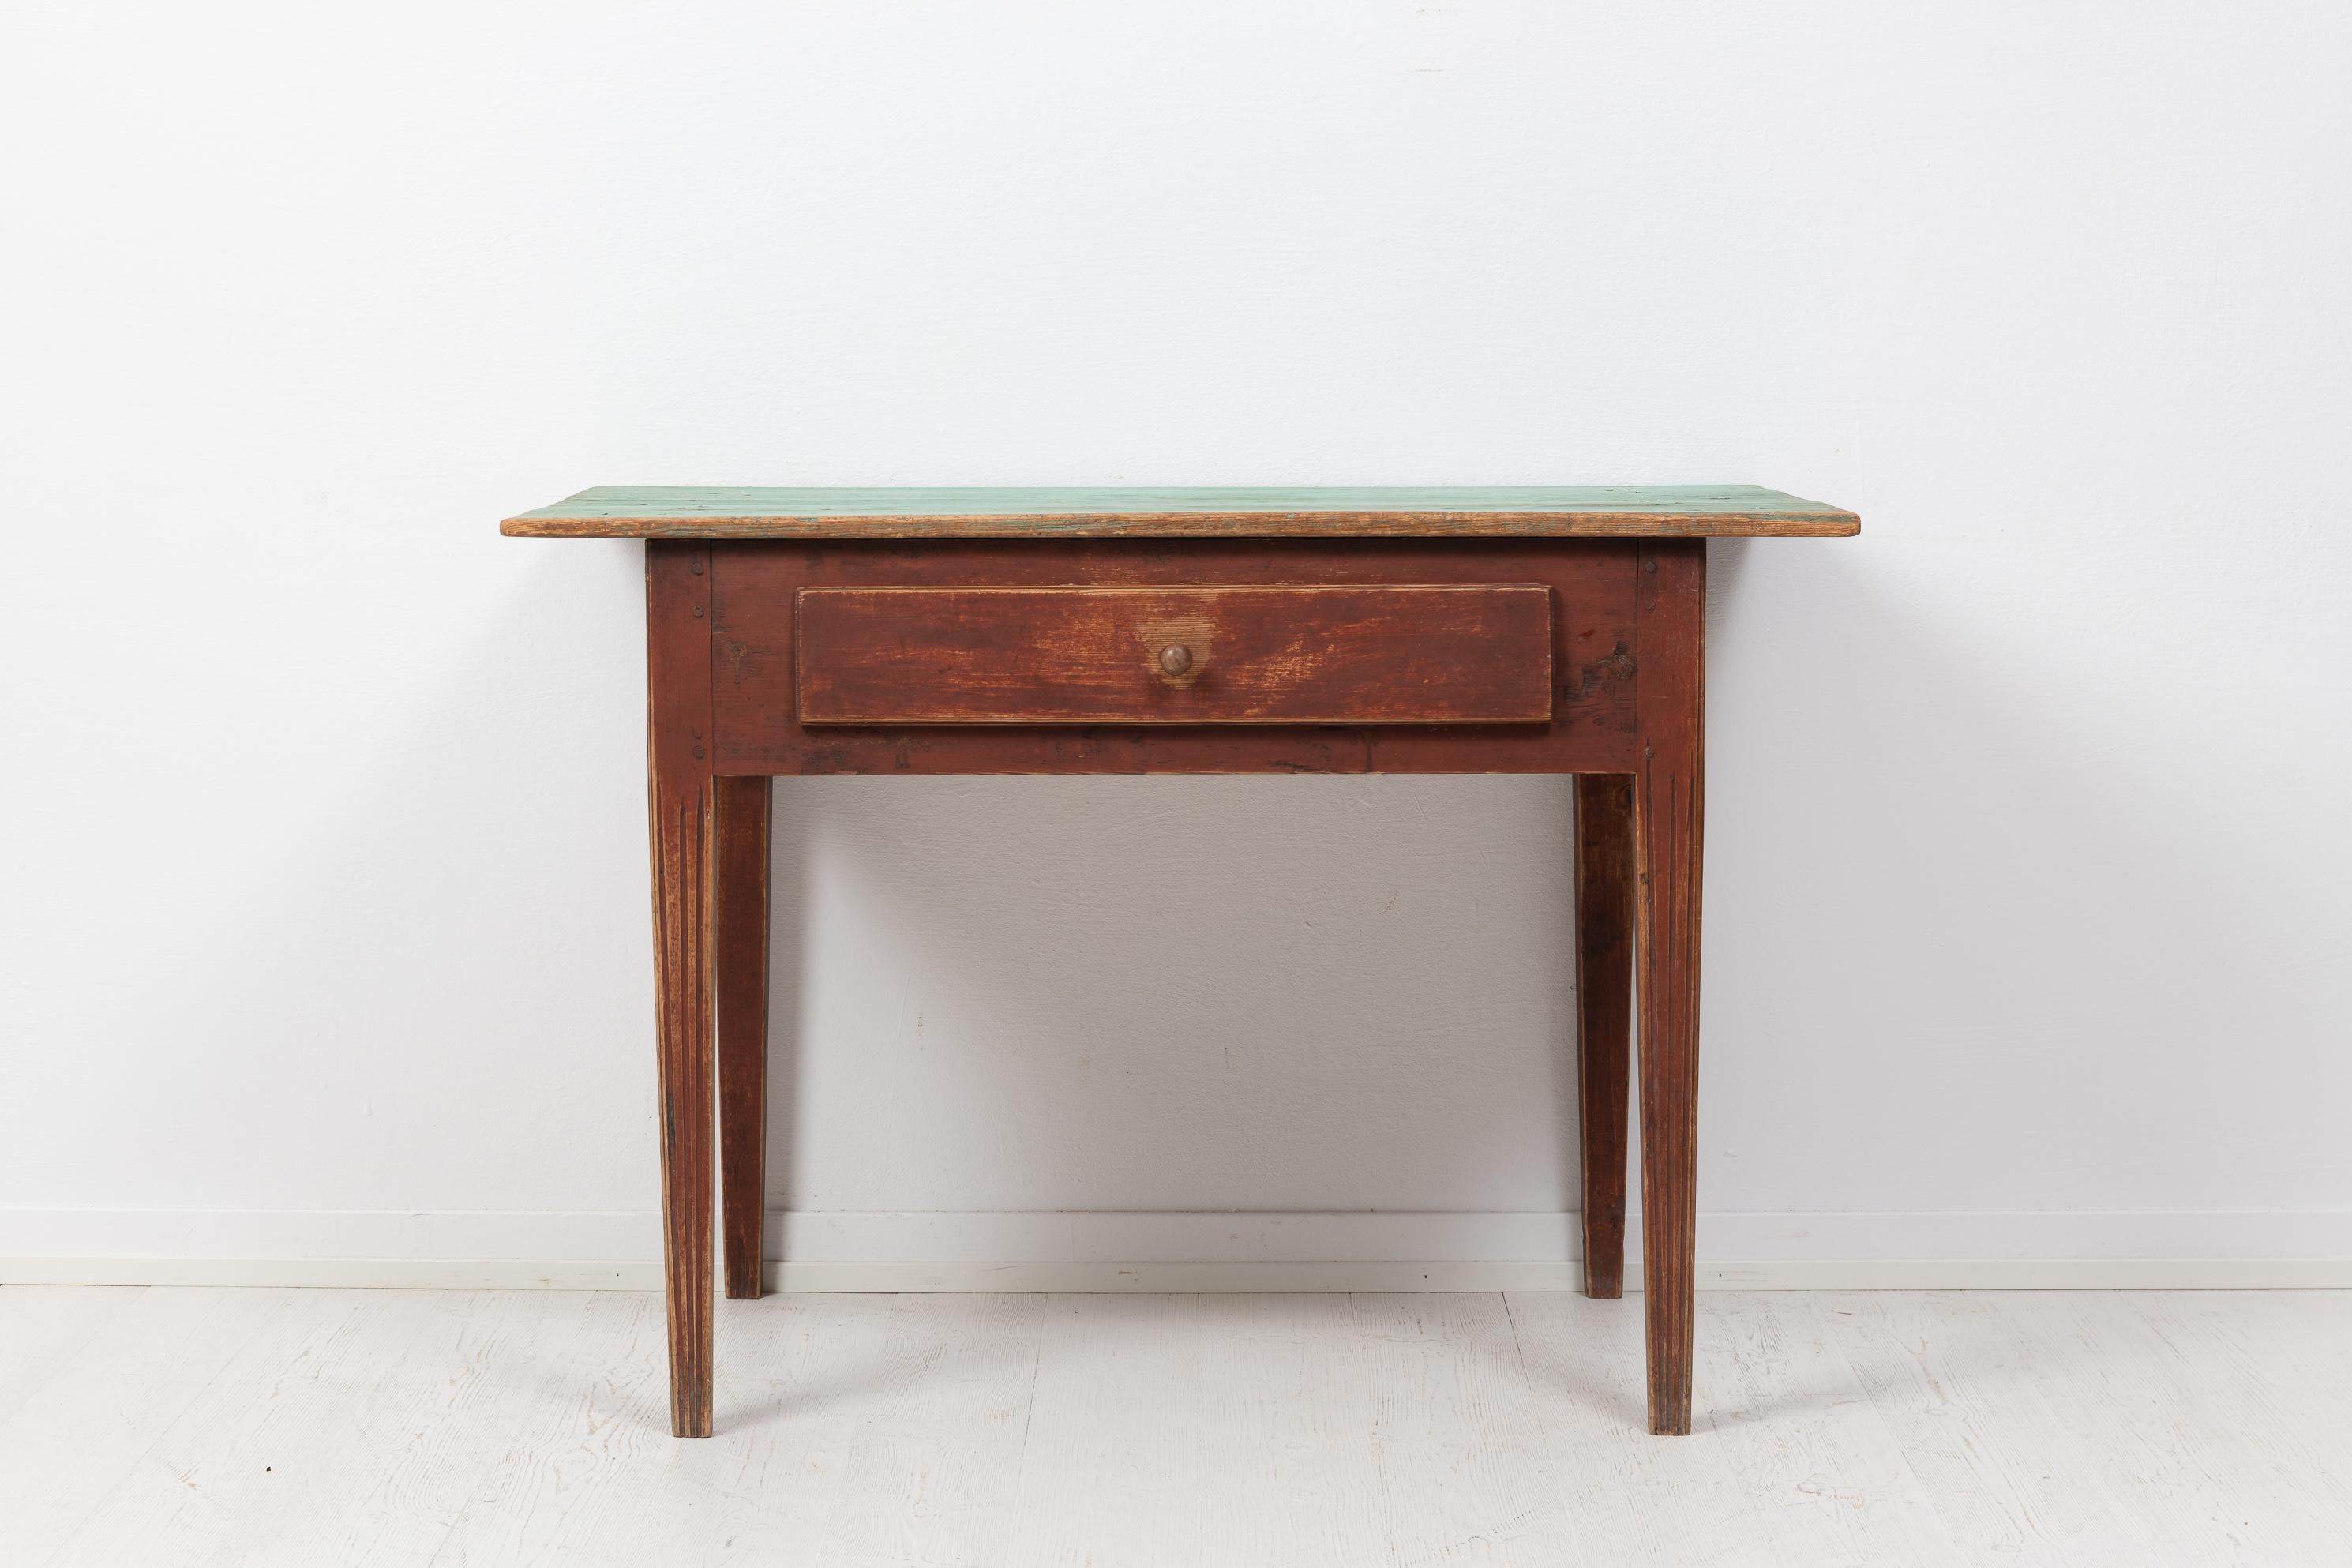 Landhaus-Wandtisch im gustavianischen Stil aus den ersten Jahren des 19. Jahrhunderts, um 1810. Der Tisch stammt aus Nordschweden und ist aus lackierter Kiefer gefertigt. Er hat eine große Schublade und gerade, konisch zulaufende Beine mit